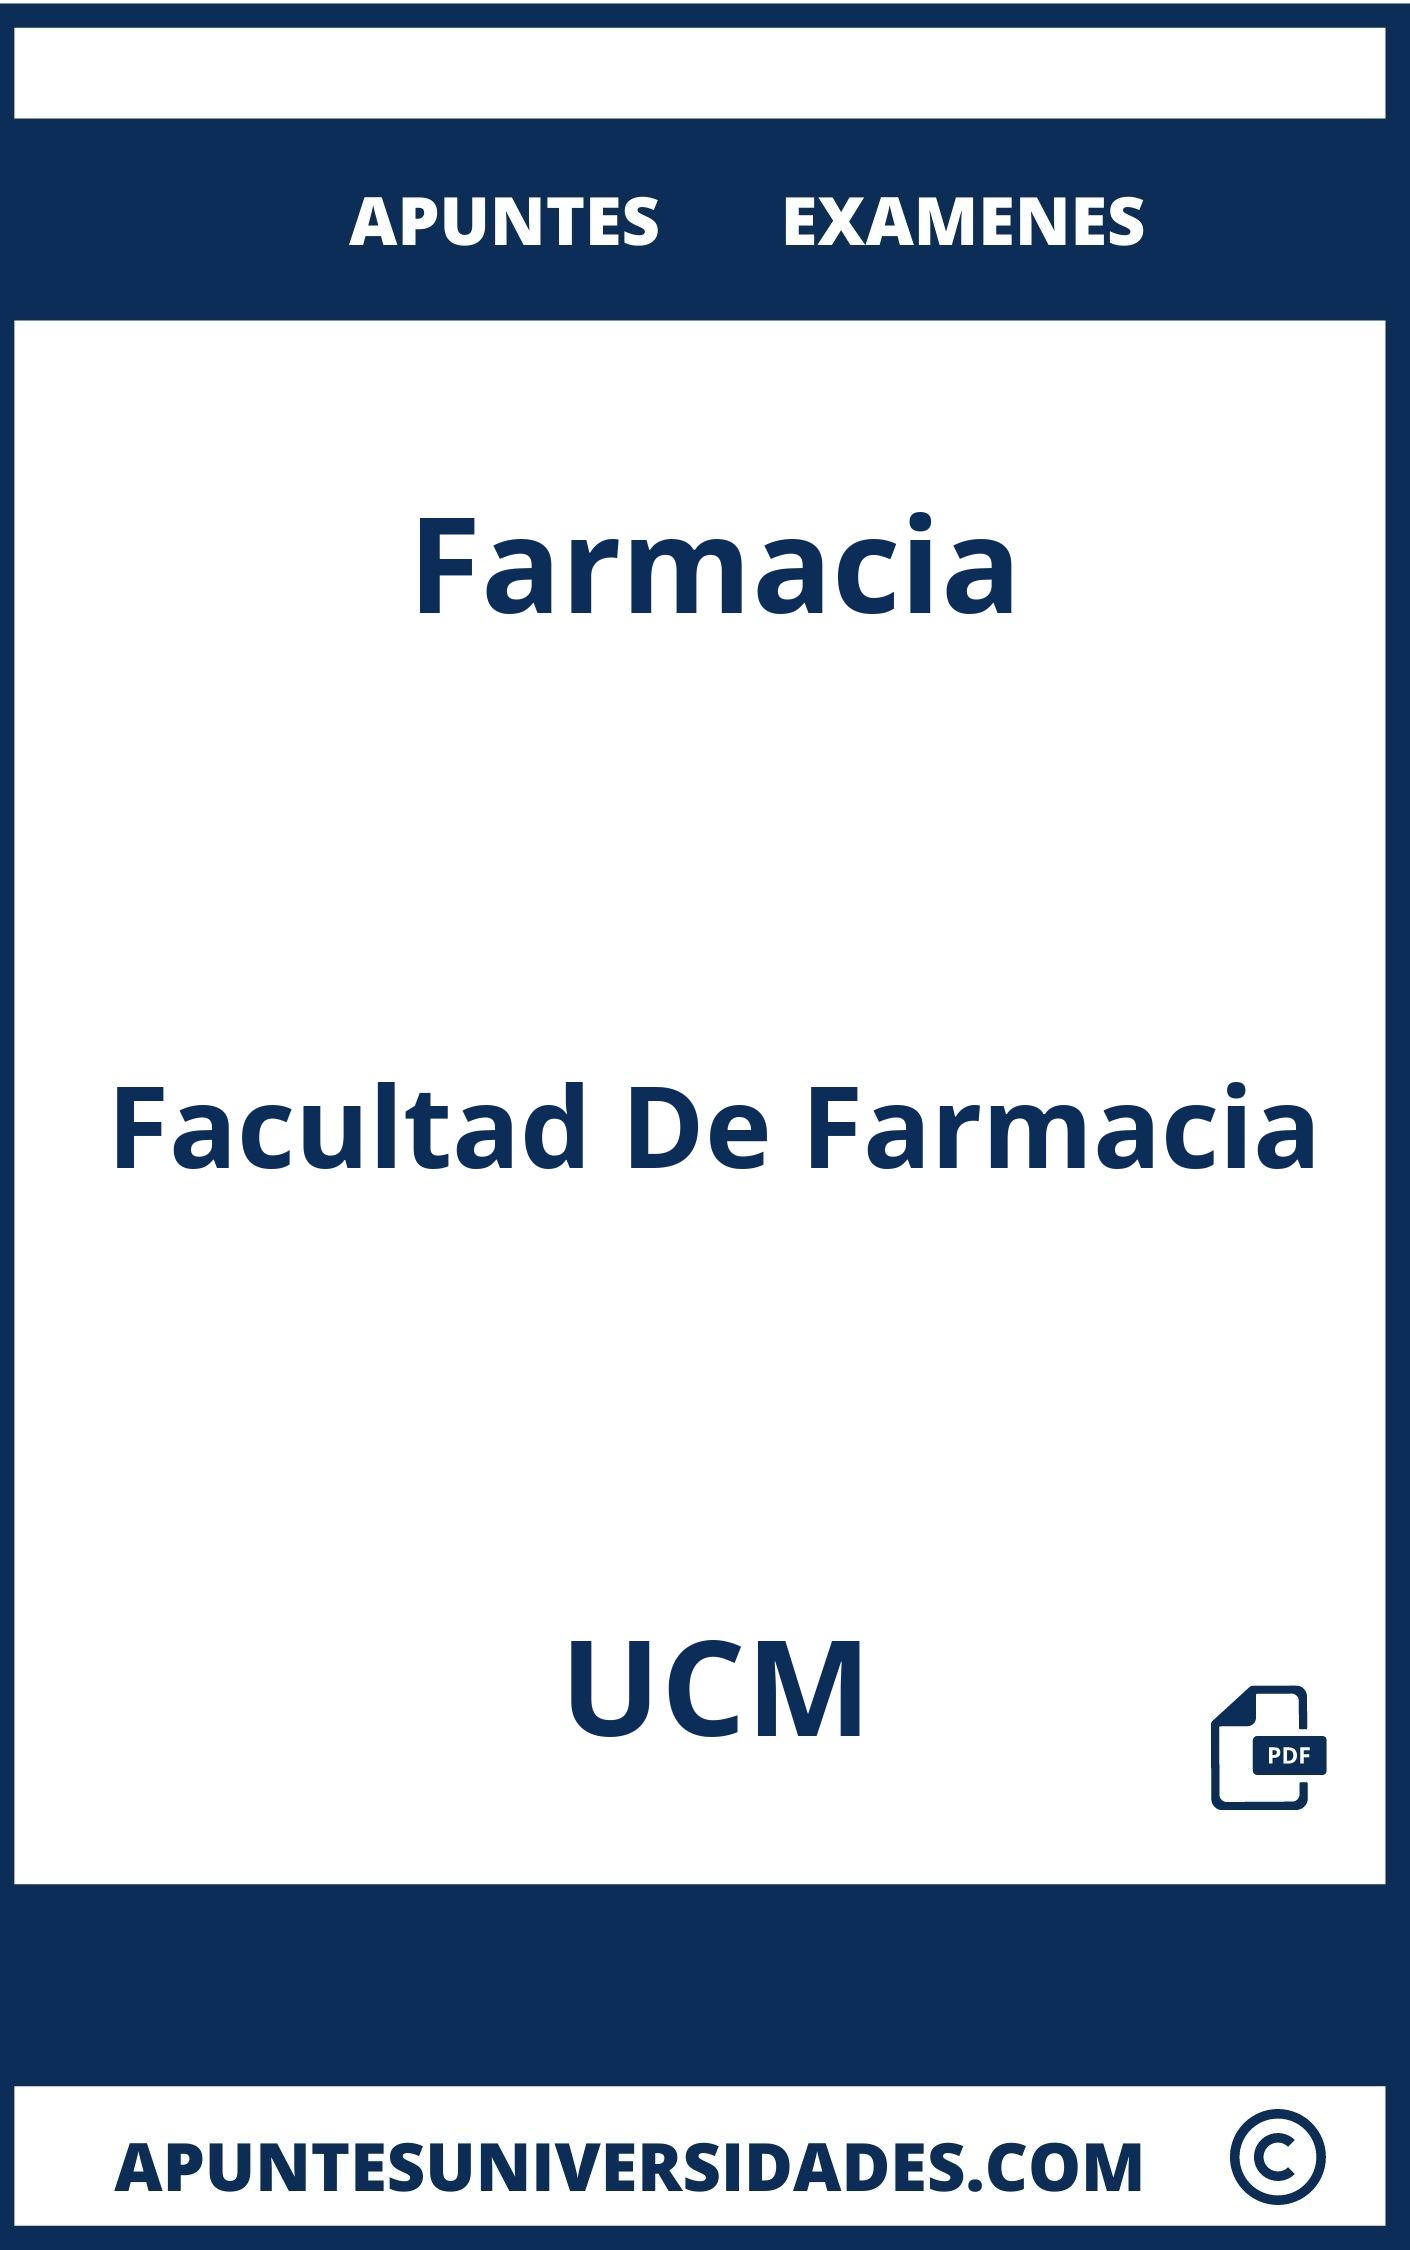 Apuntes y Examenes de Farmacia UCM